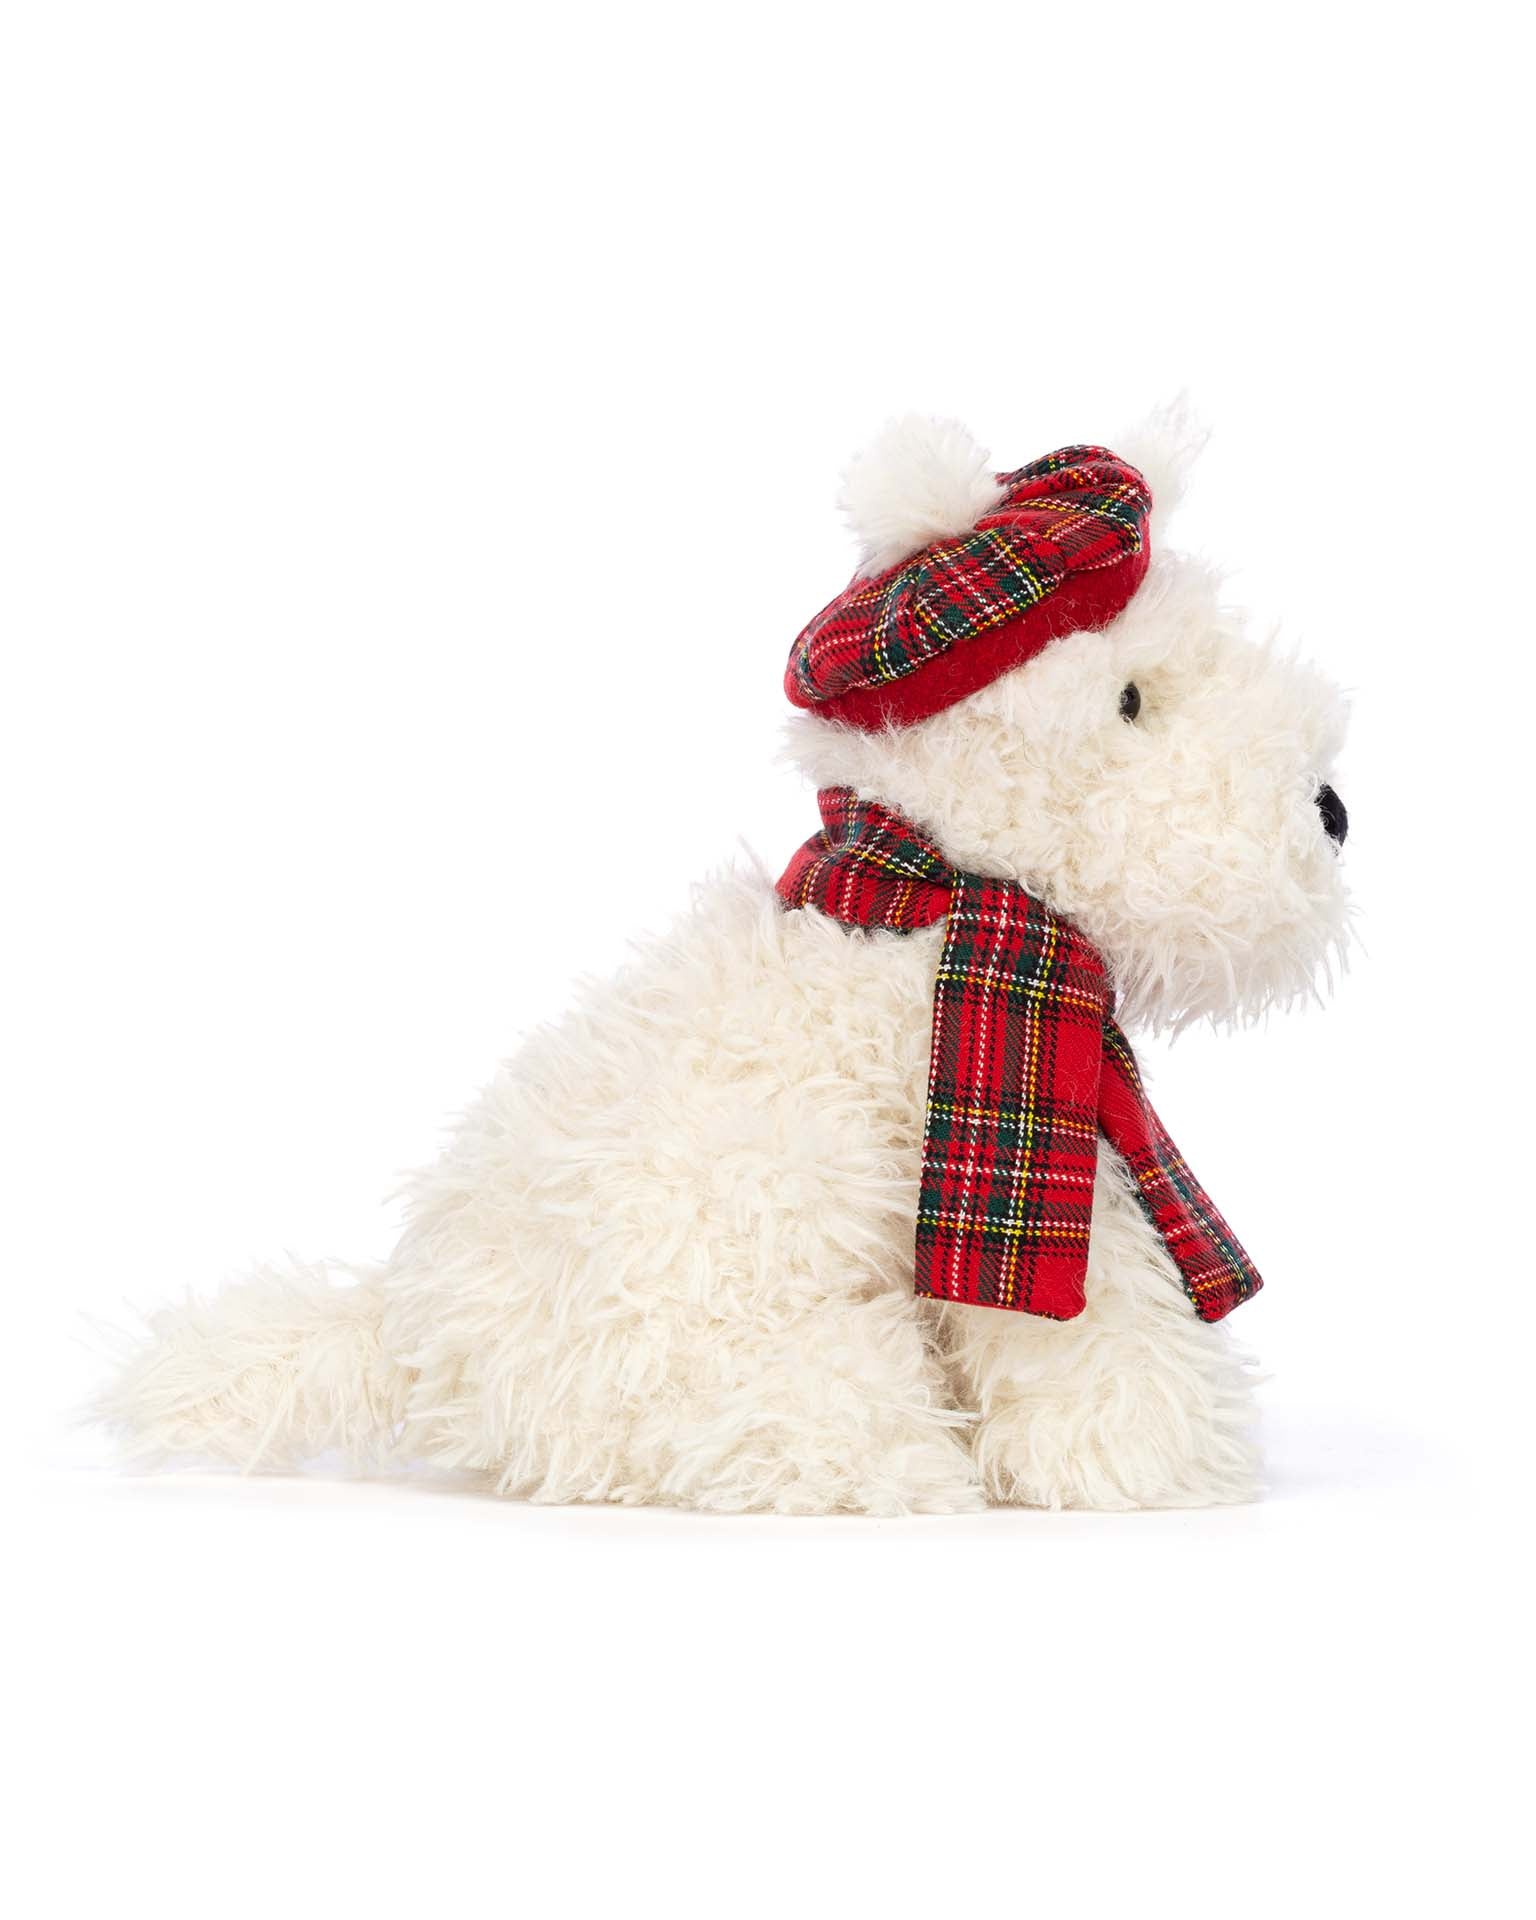 winter warmer munro scottie dog